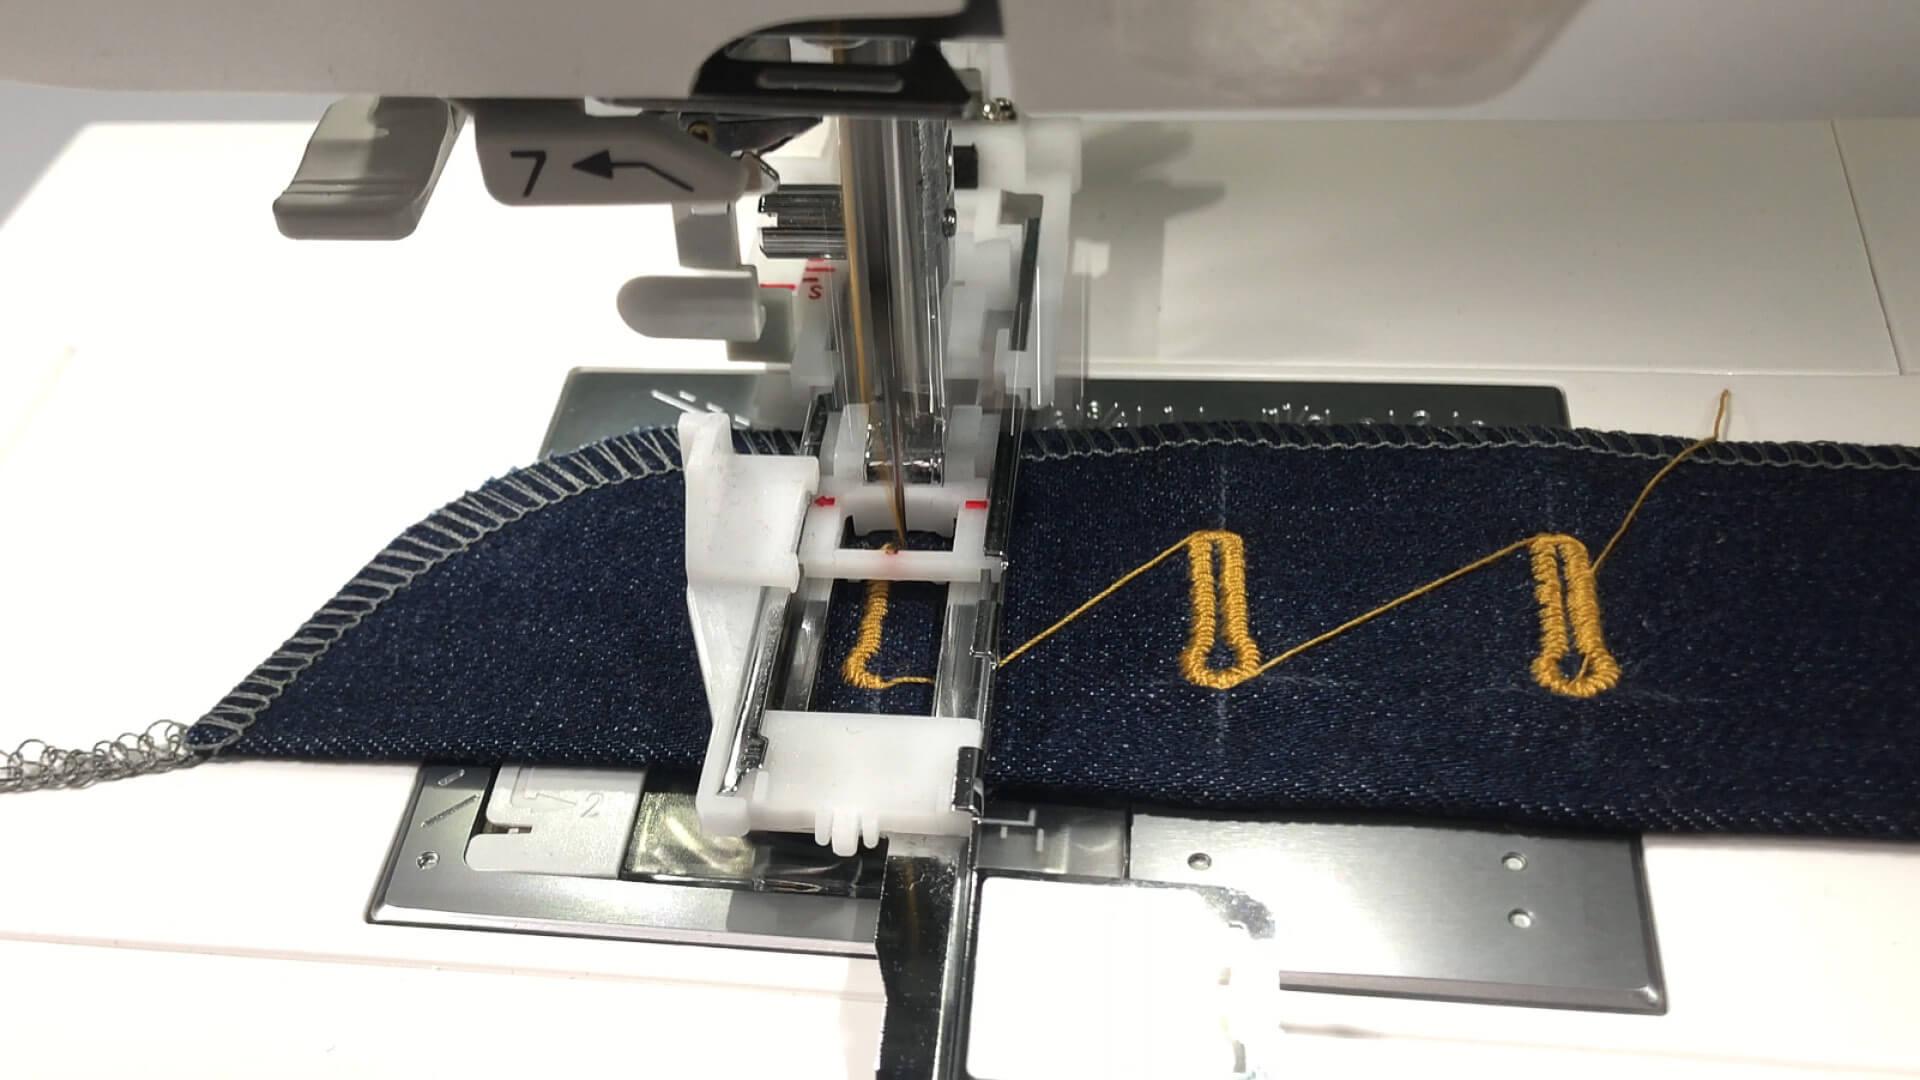 smartPATTERN Nähanleitung für Schlitz mit verdeckter Knopfleiste einer Jeans- Augenknopflöcher sticken